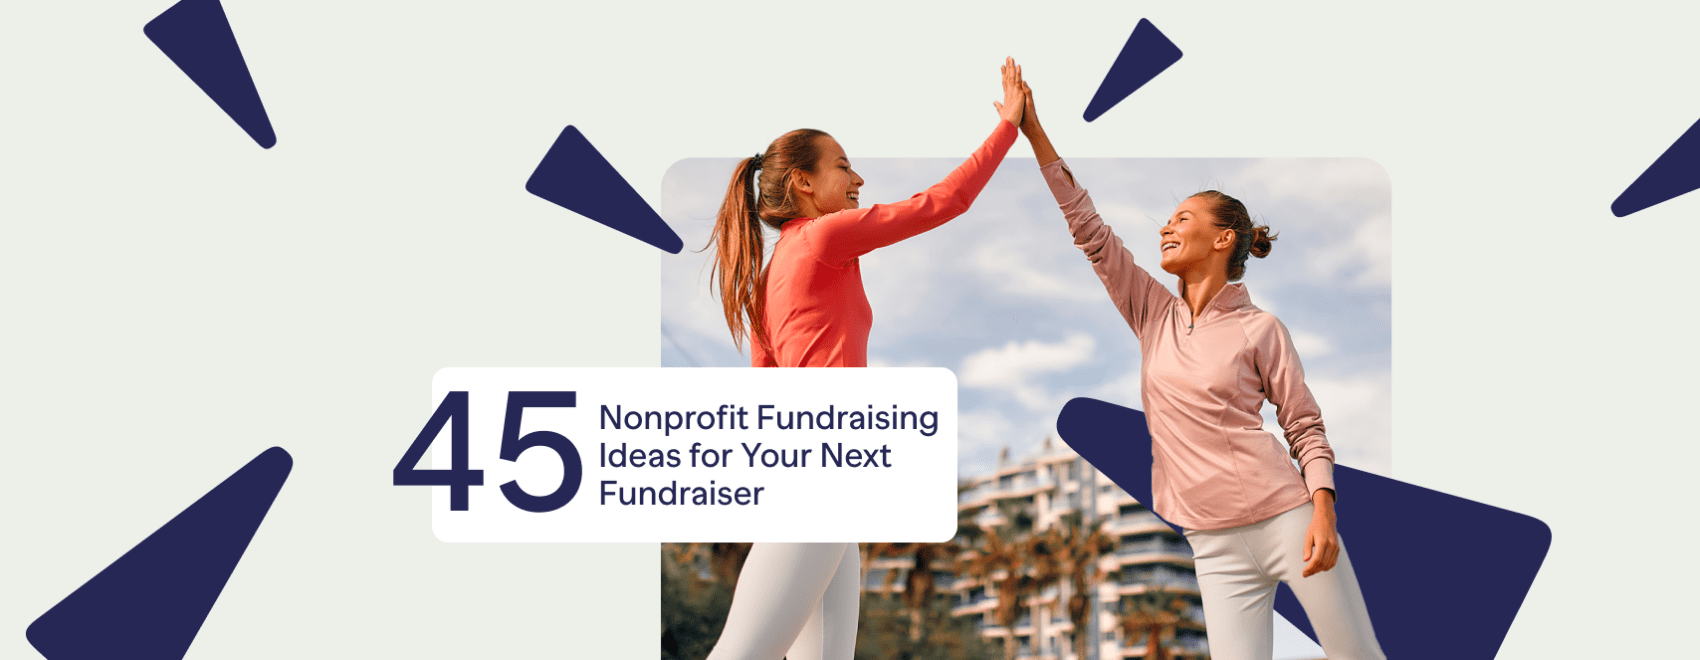 45 Nonprofit Fundraising Ideas